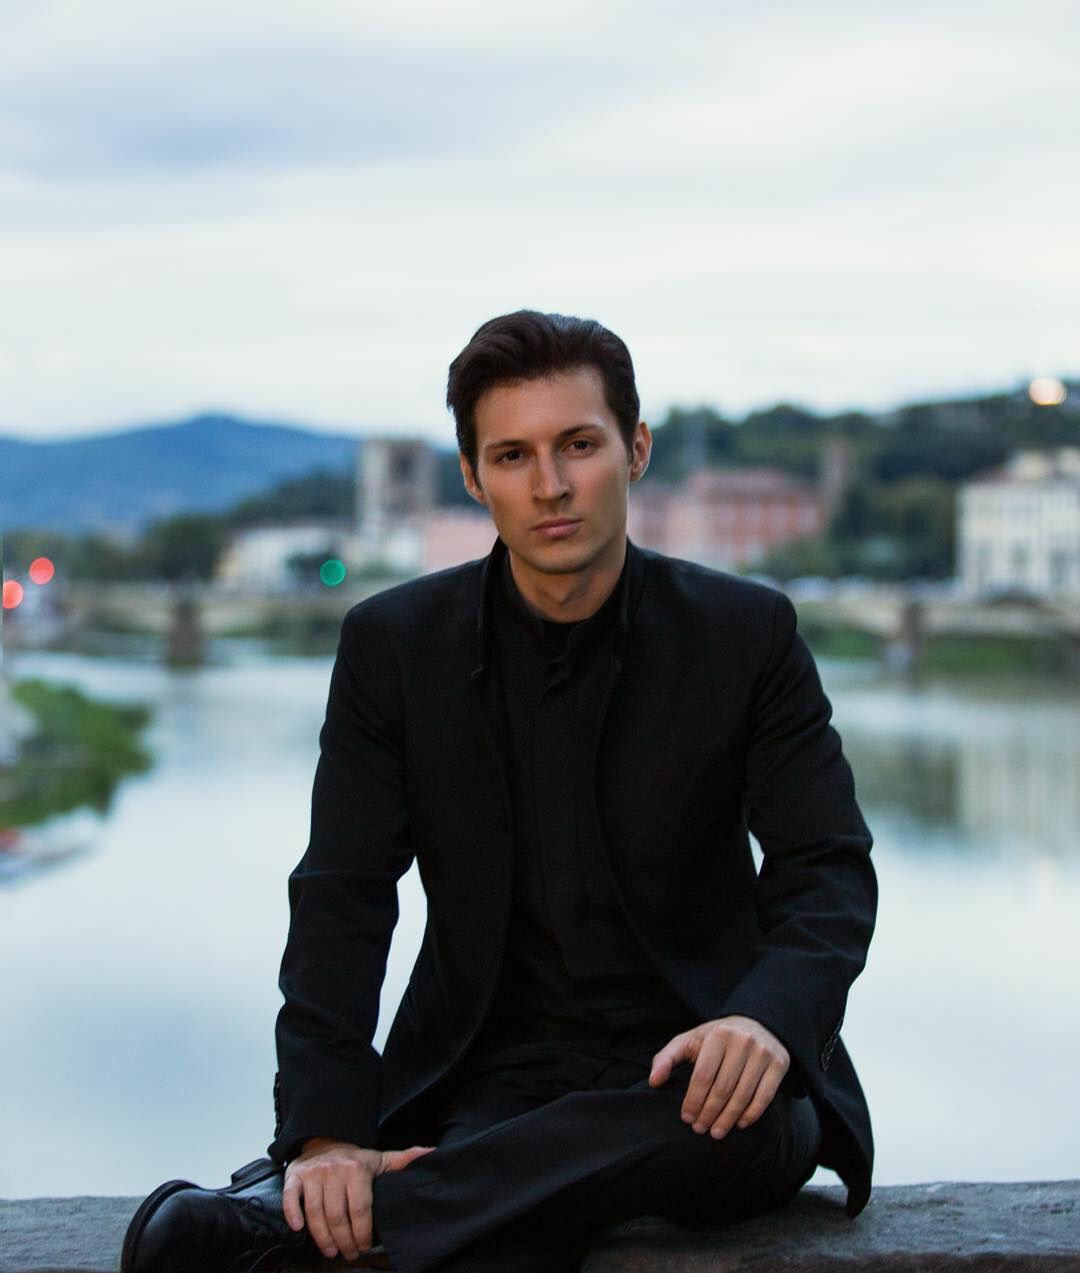 Павел Дуров: казанский стрелок раскрыл свои планы в Telegram за 15 минут до трагедии